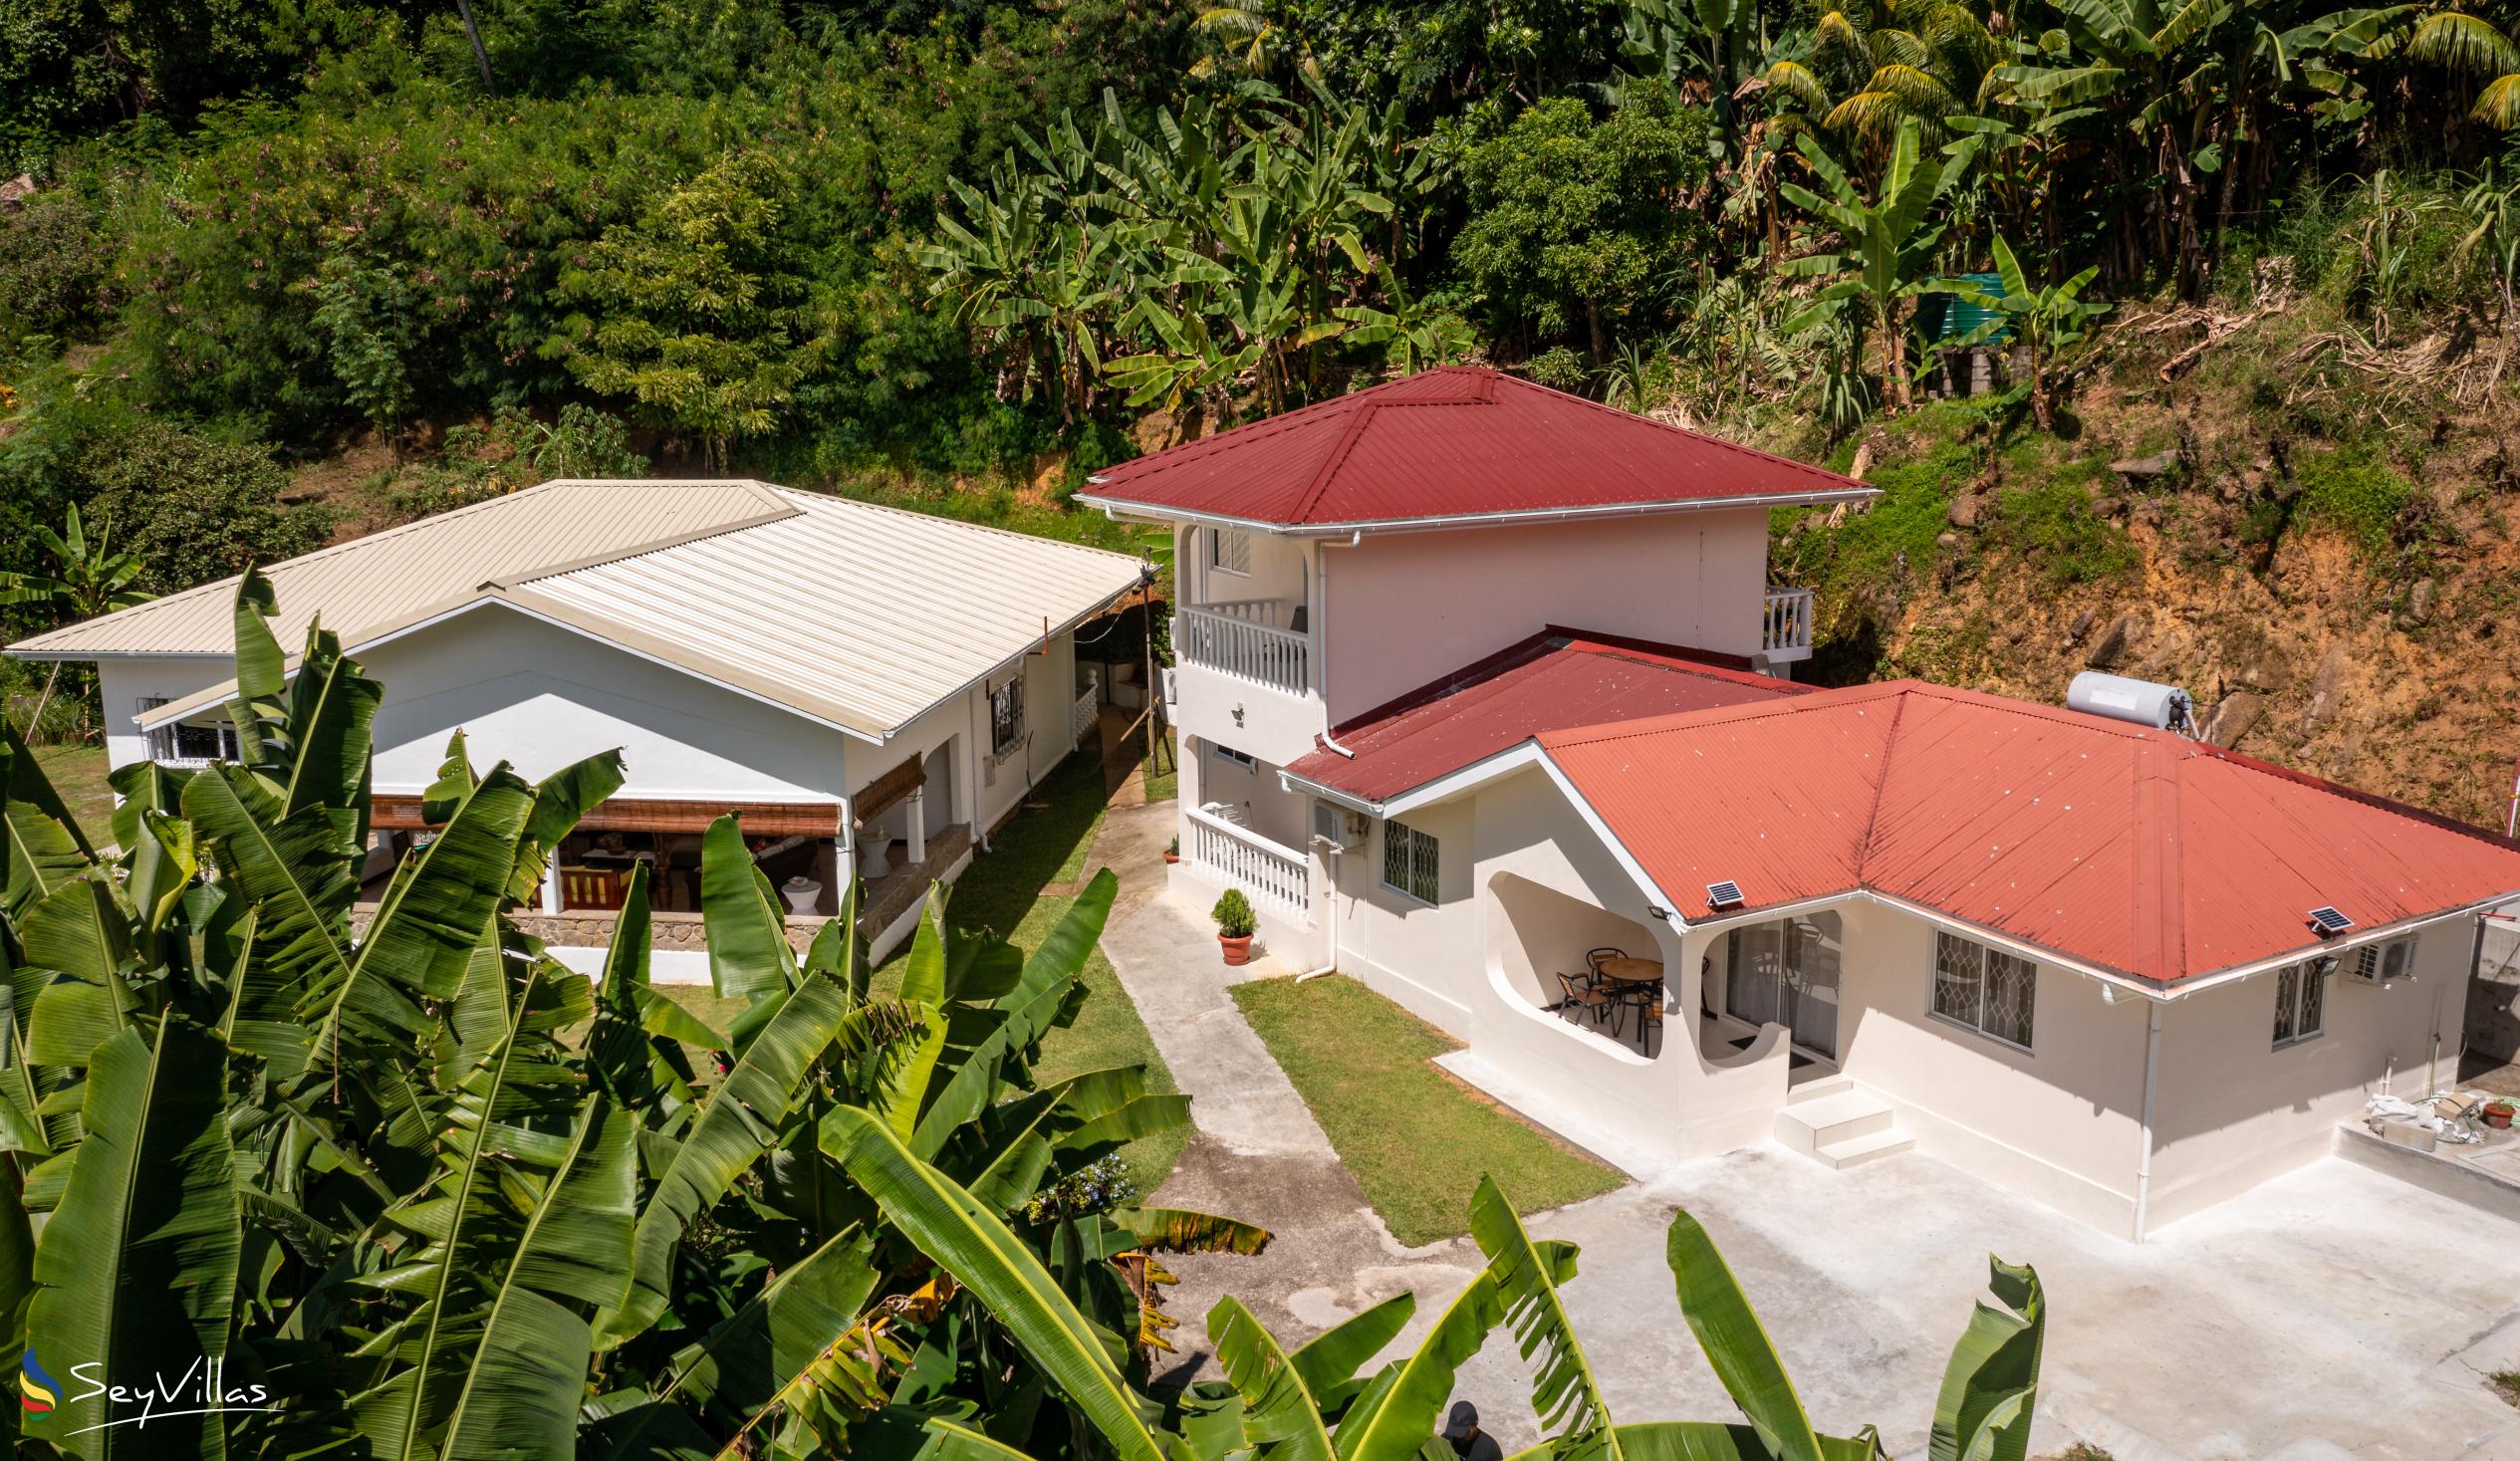 Photo 3: Paul's Residence - Outdoor area - Mahé (Seychelles)